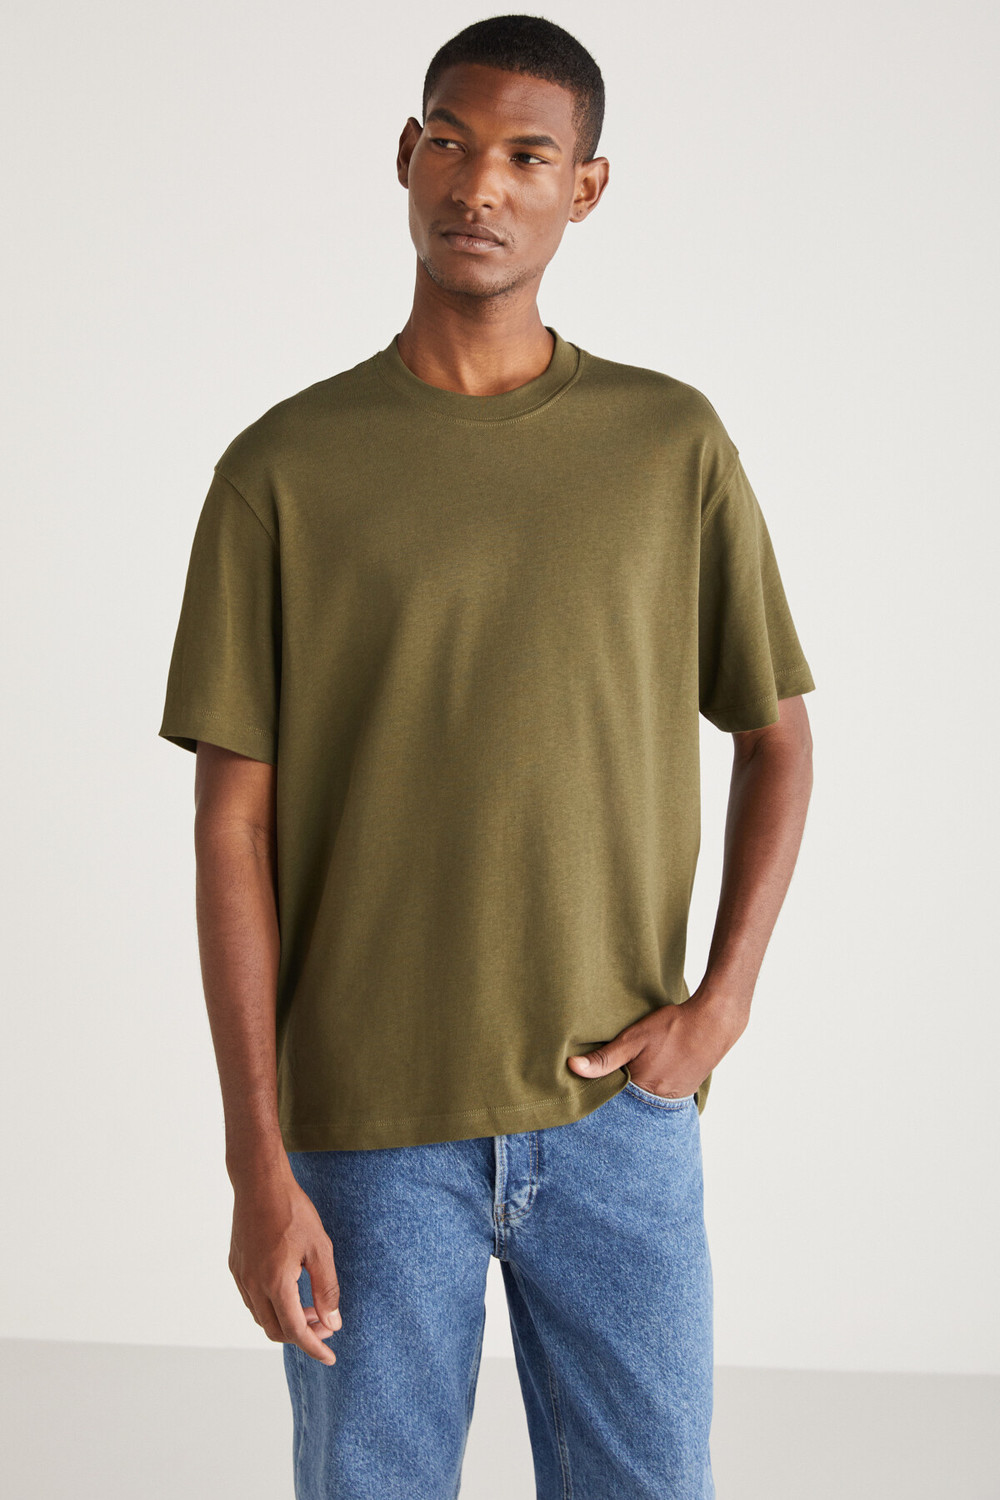 GRIMELANGE CURTIS Basic Relaxed Khaki Single T-Shirt